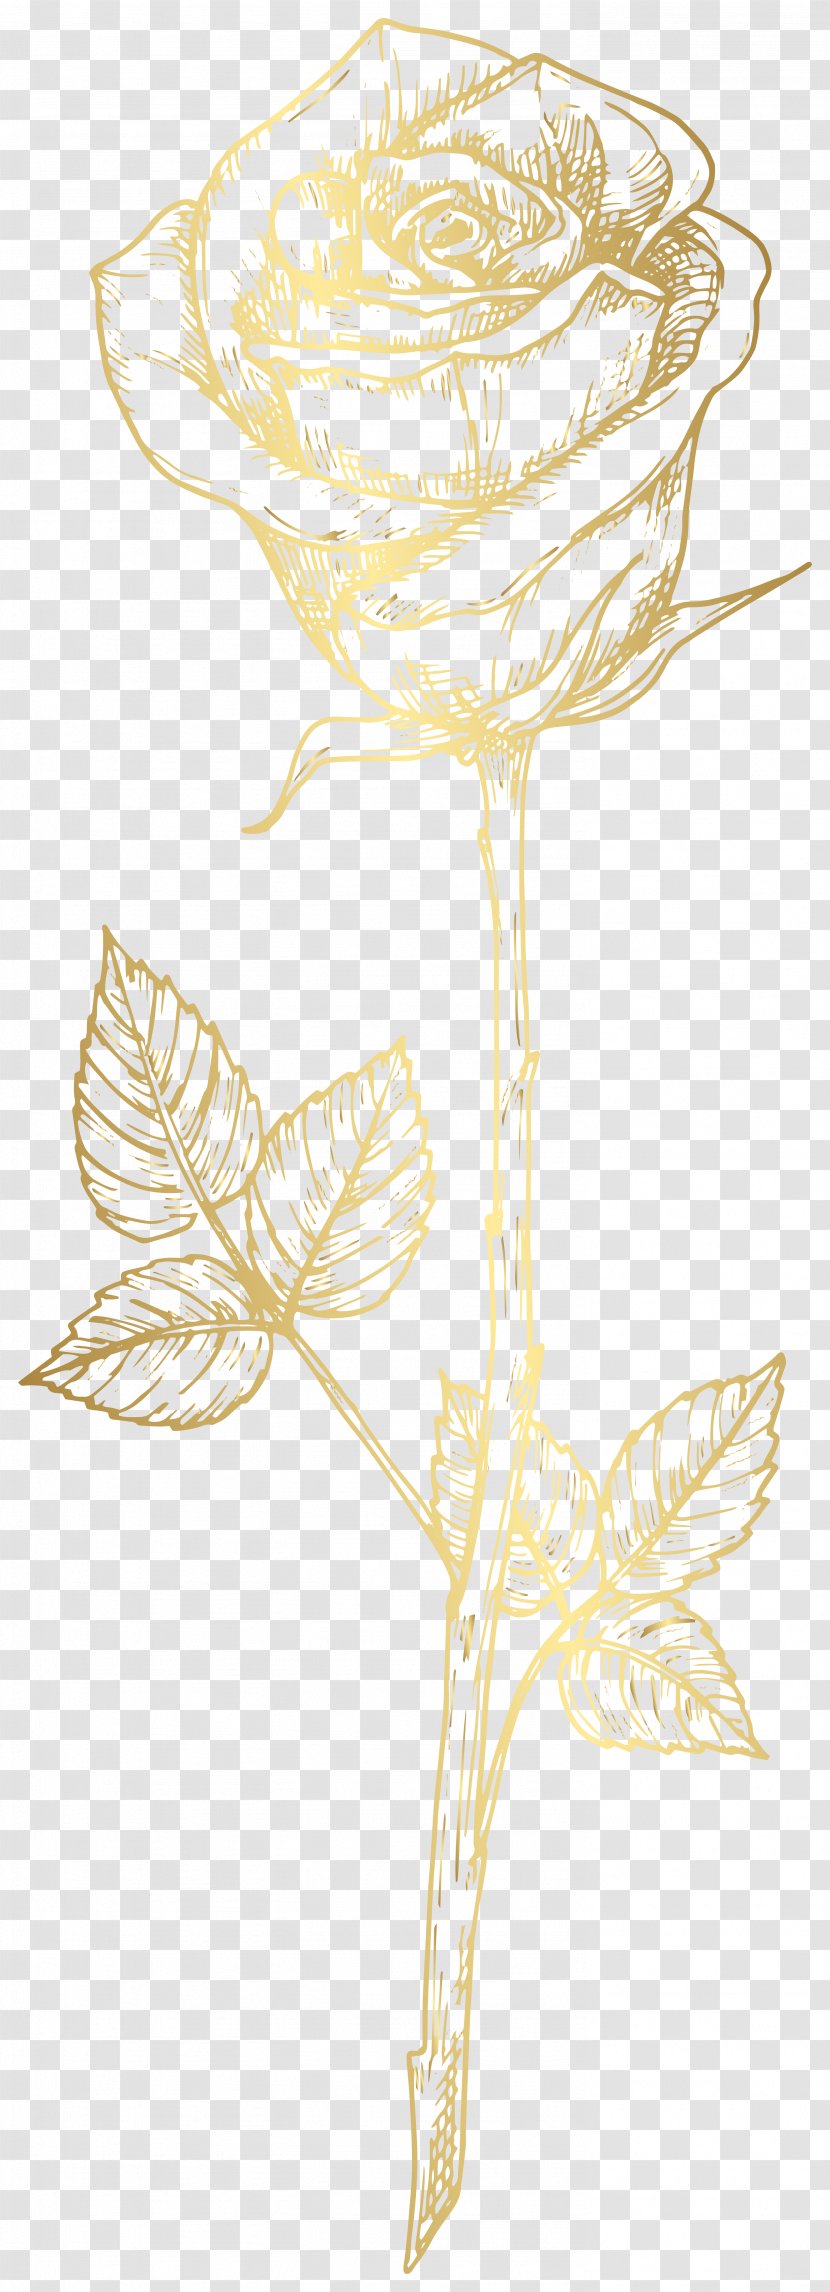 Image Clip Art Floral Design Illustration - Rose - Gold Watch Transparent PNG